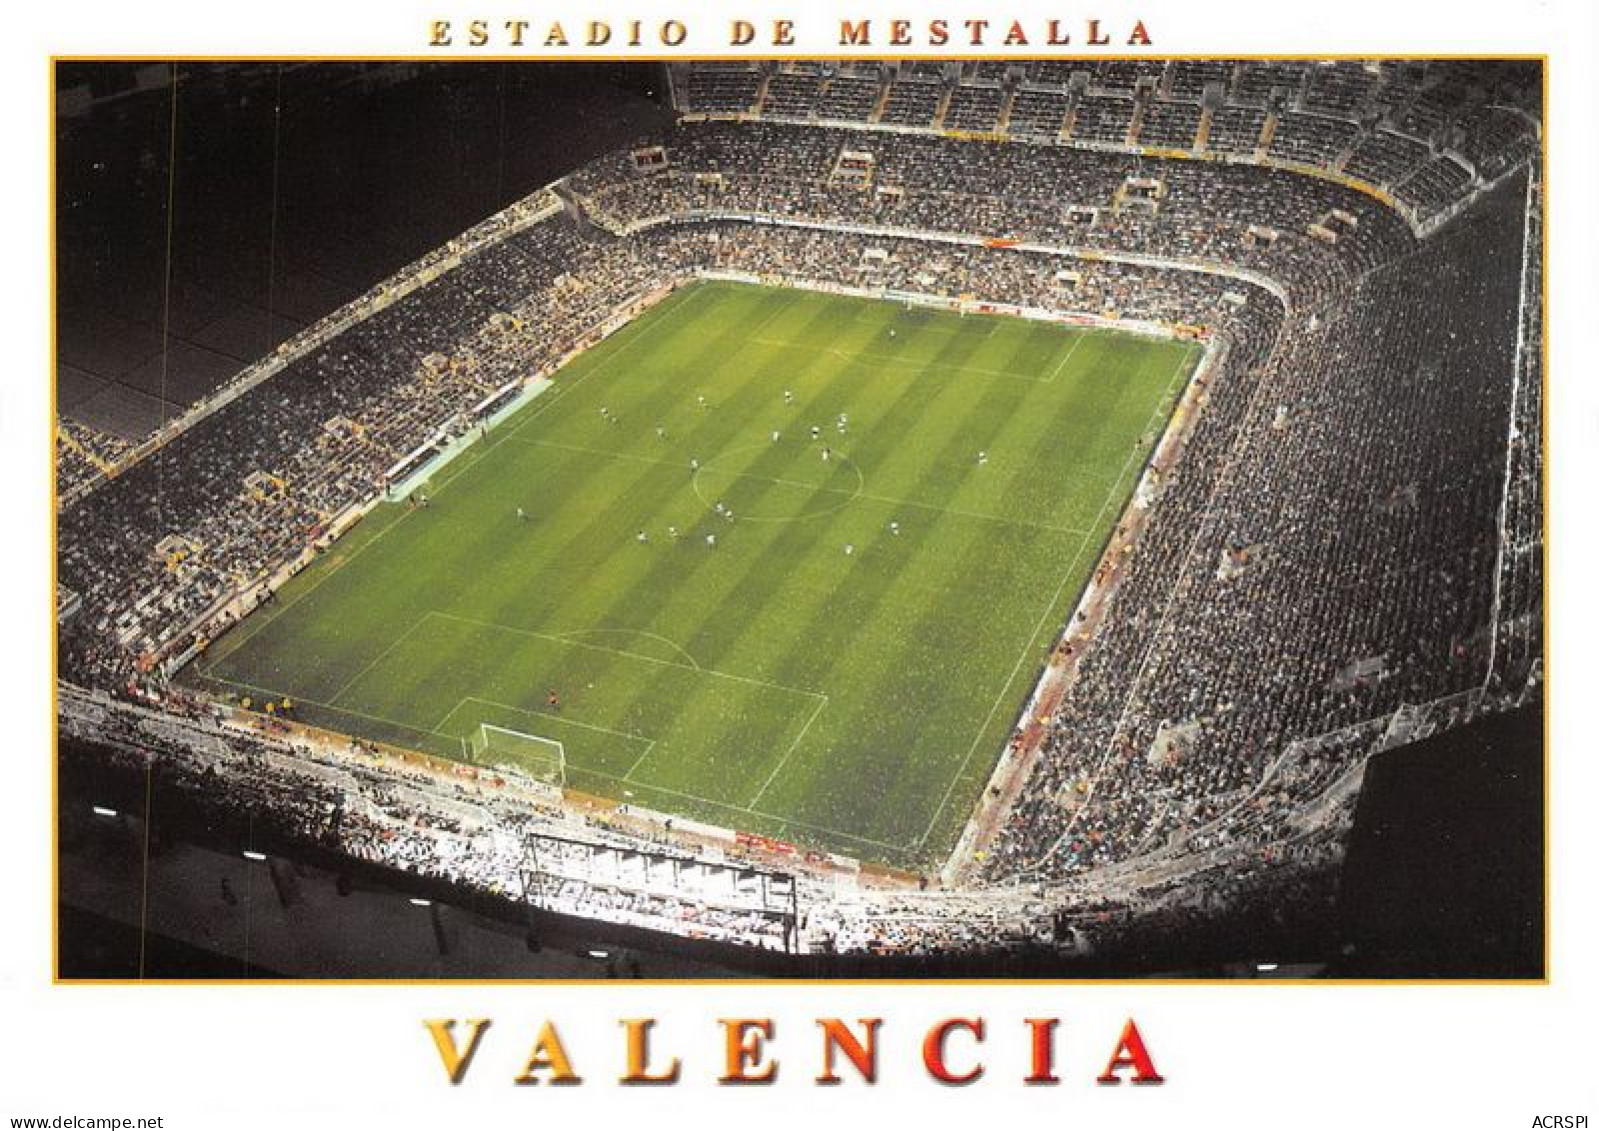 VALENCIA Estadio De Futbol Mestralla 3(scan Recto-verso) MA1092 - Valencia